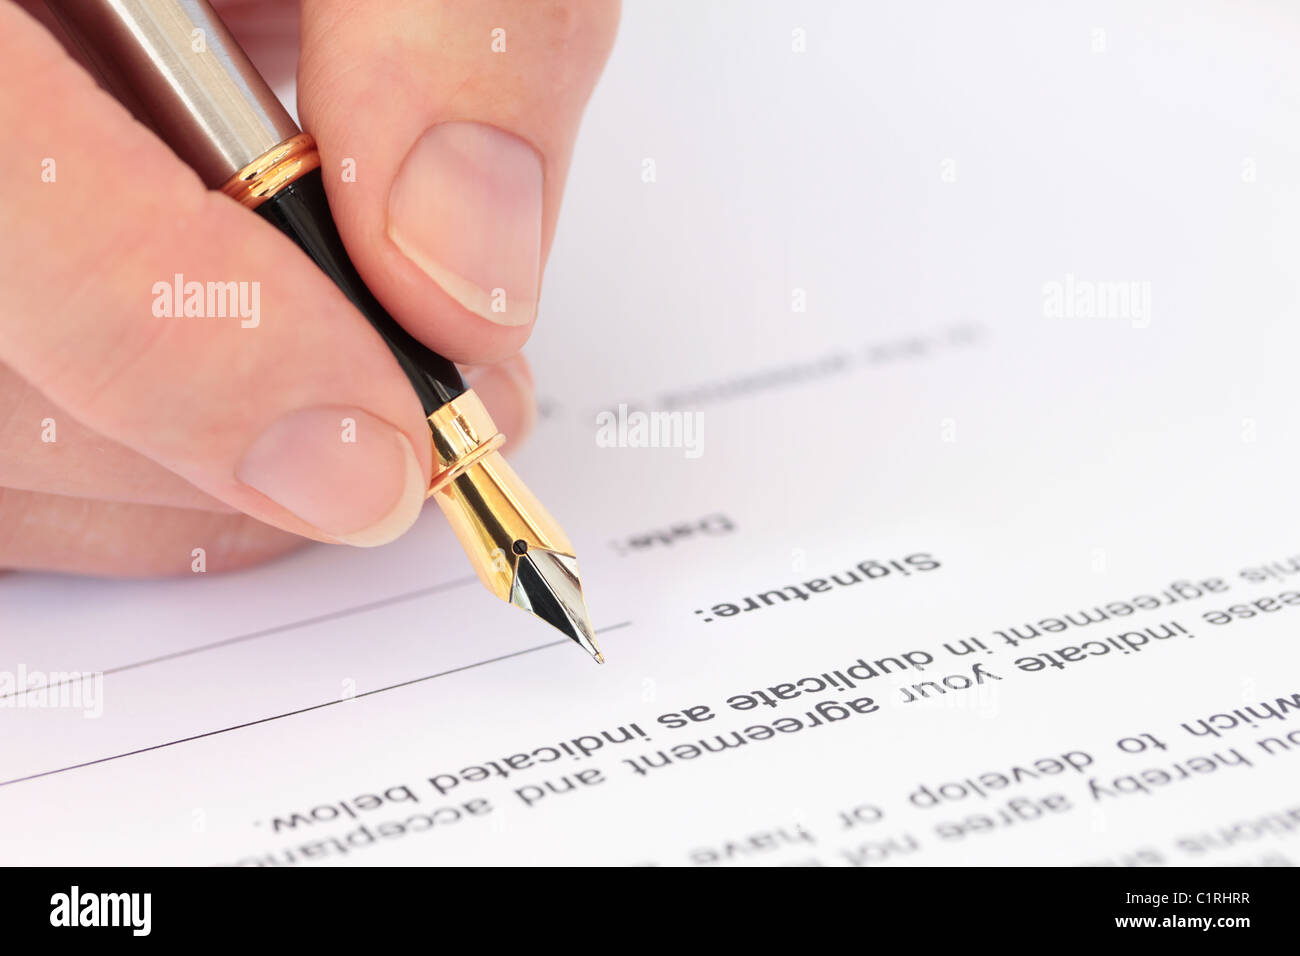 La main avec stylo et signer un document Banque D'Images